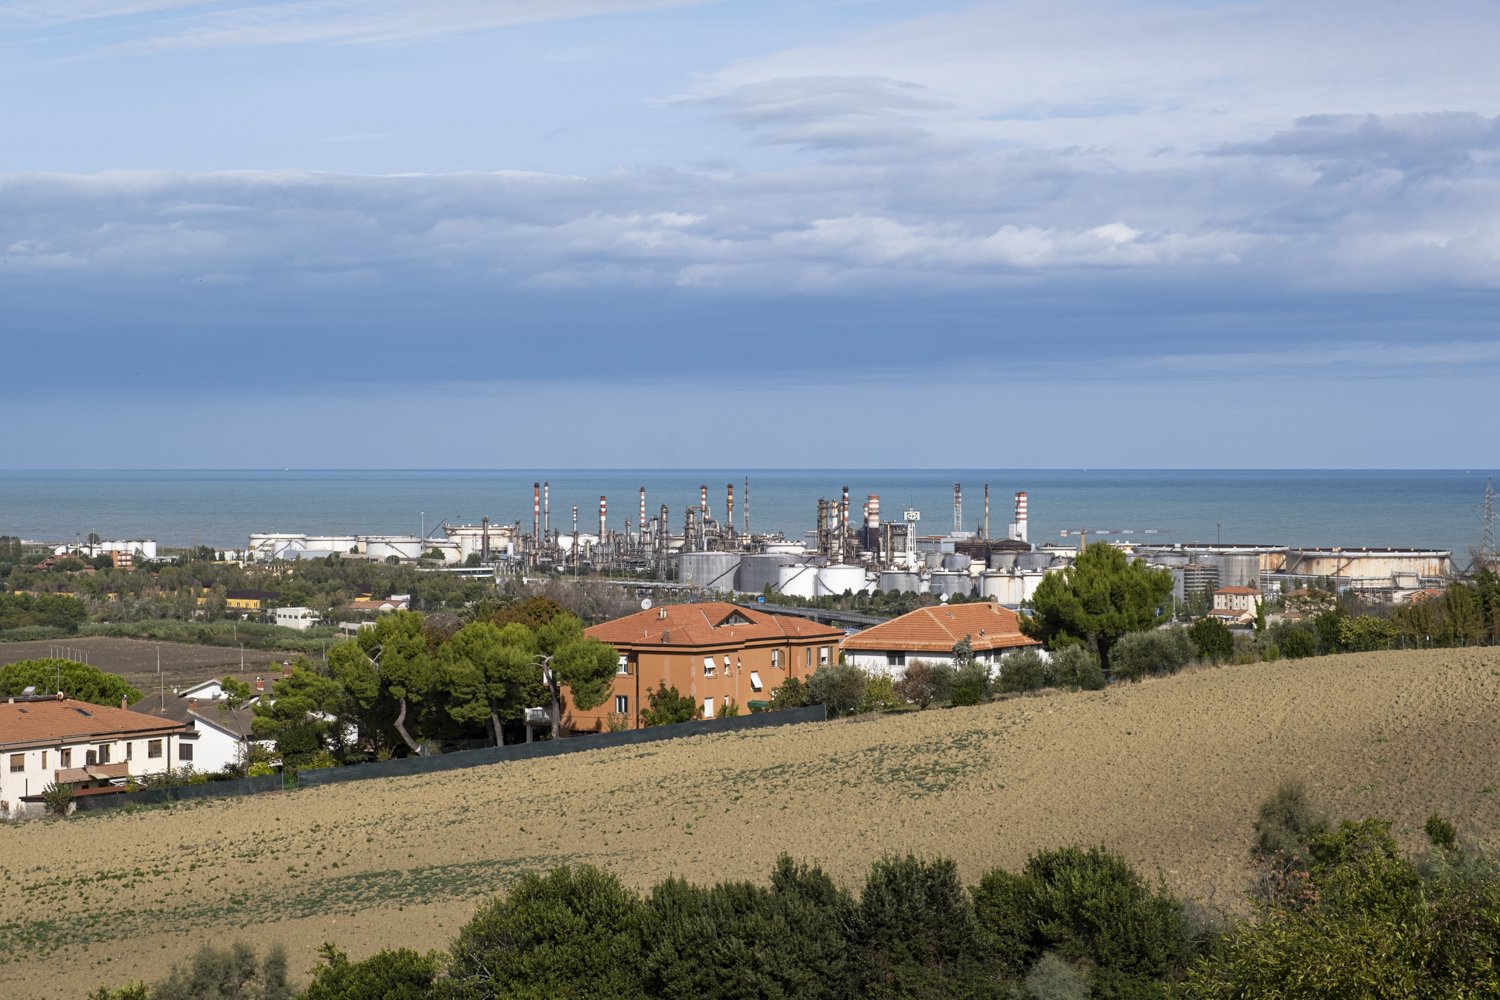  L’impianto petrolchimico API nel comune di Falconara Marittima. (Ancona), 2023. 